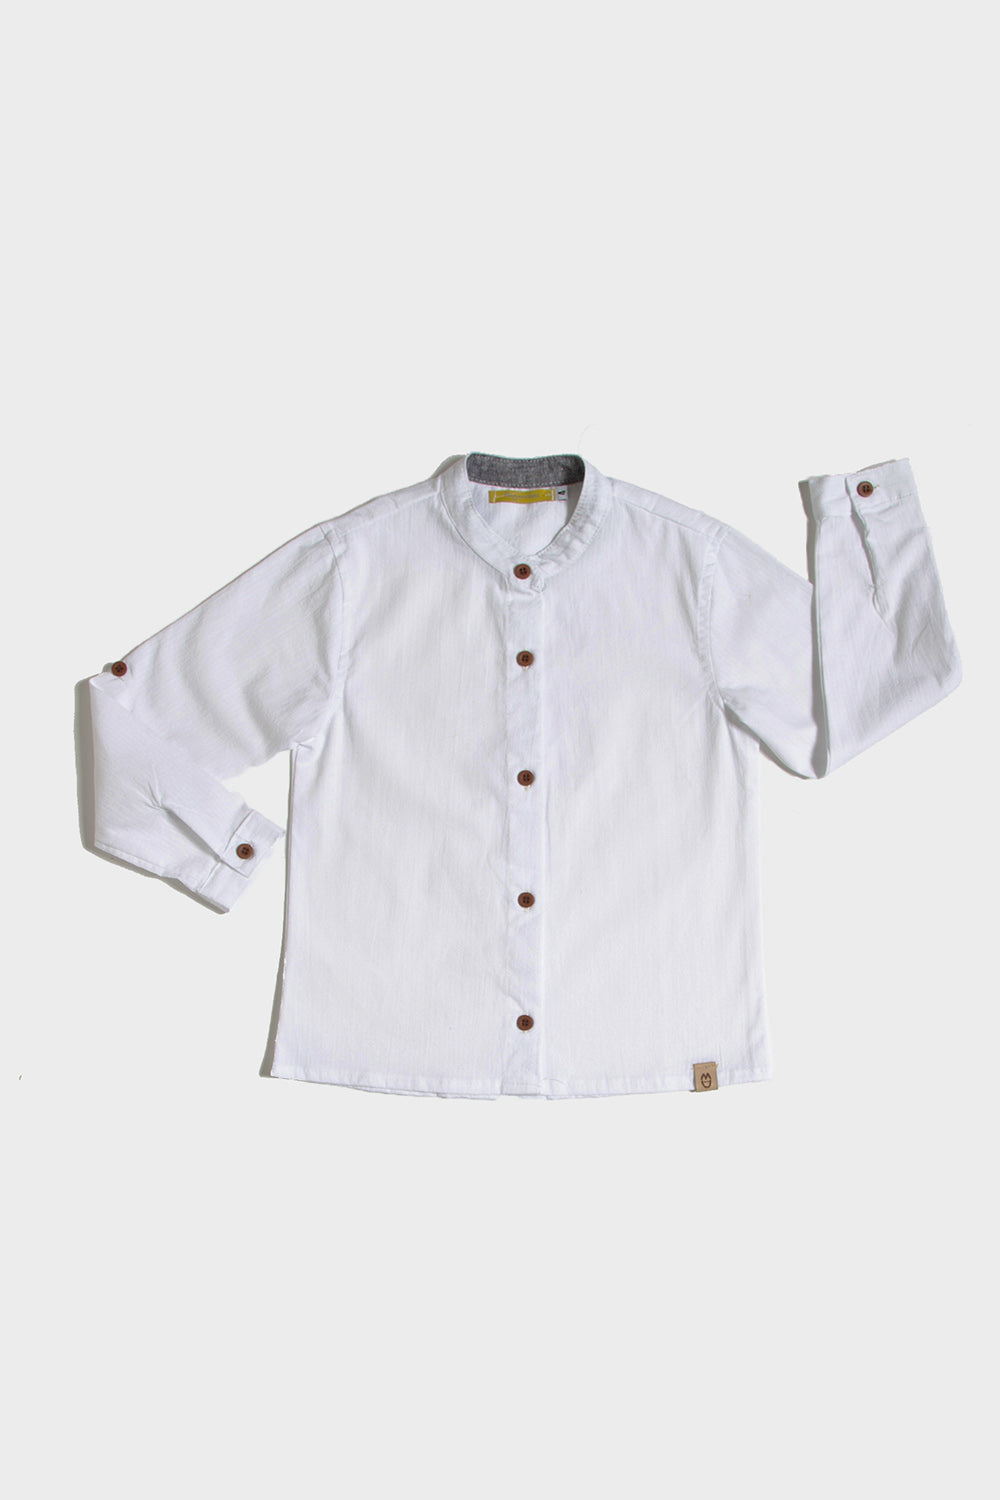 Camisa Infantil Algodão Branca